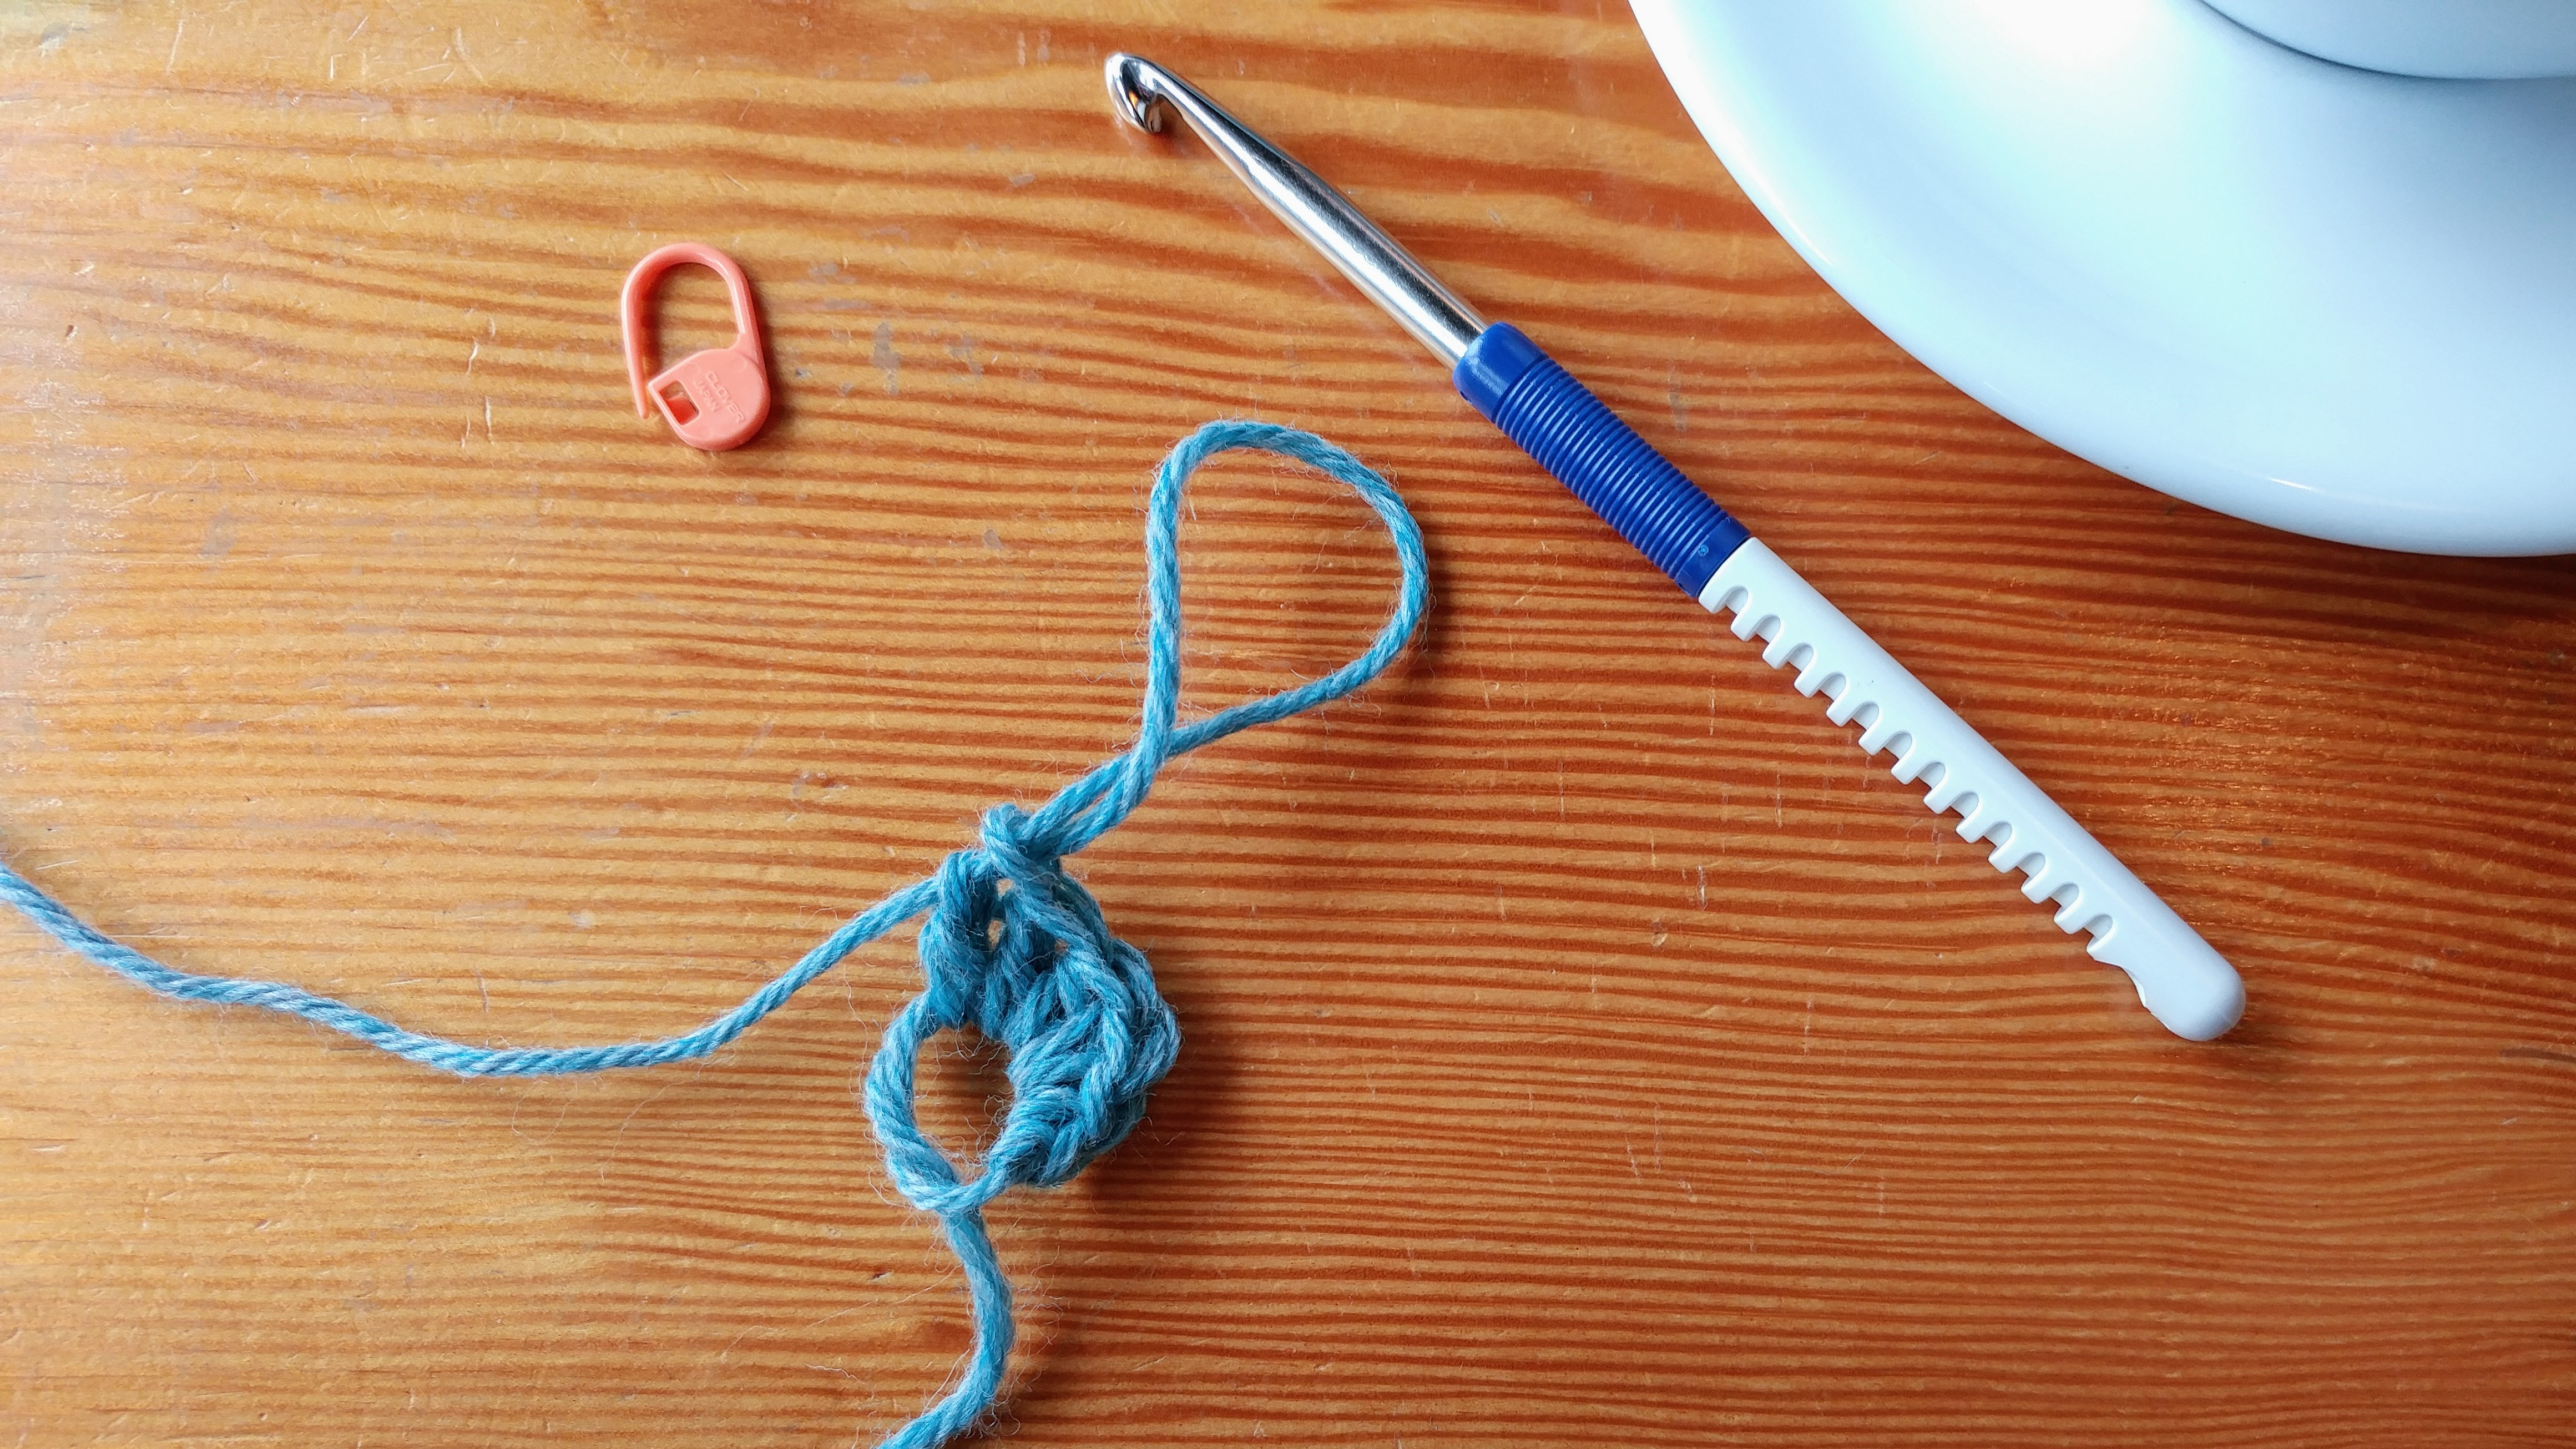 Crochet adjustable ring tutorial video.